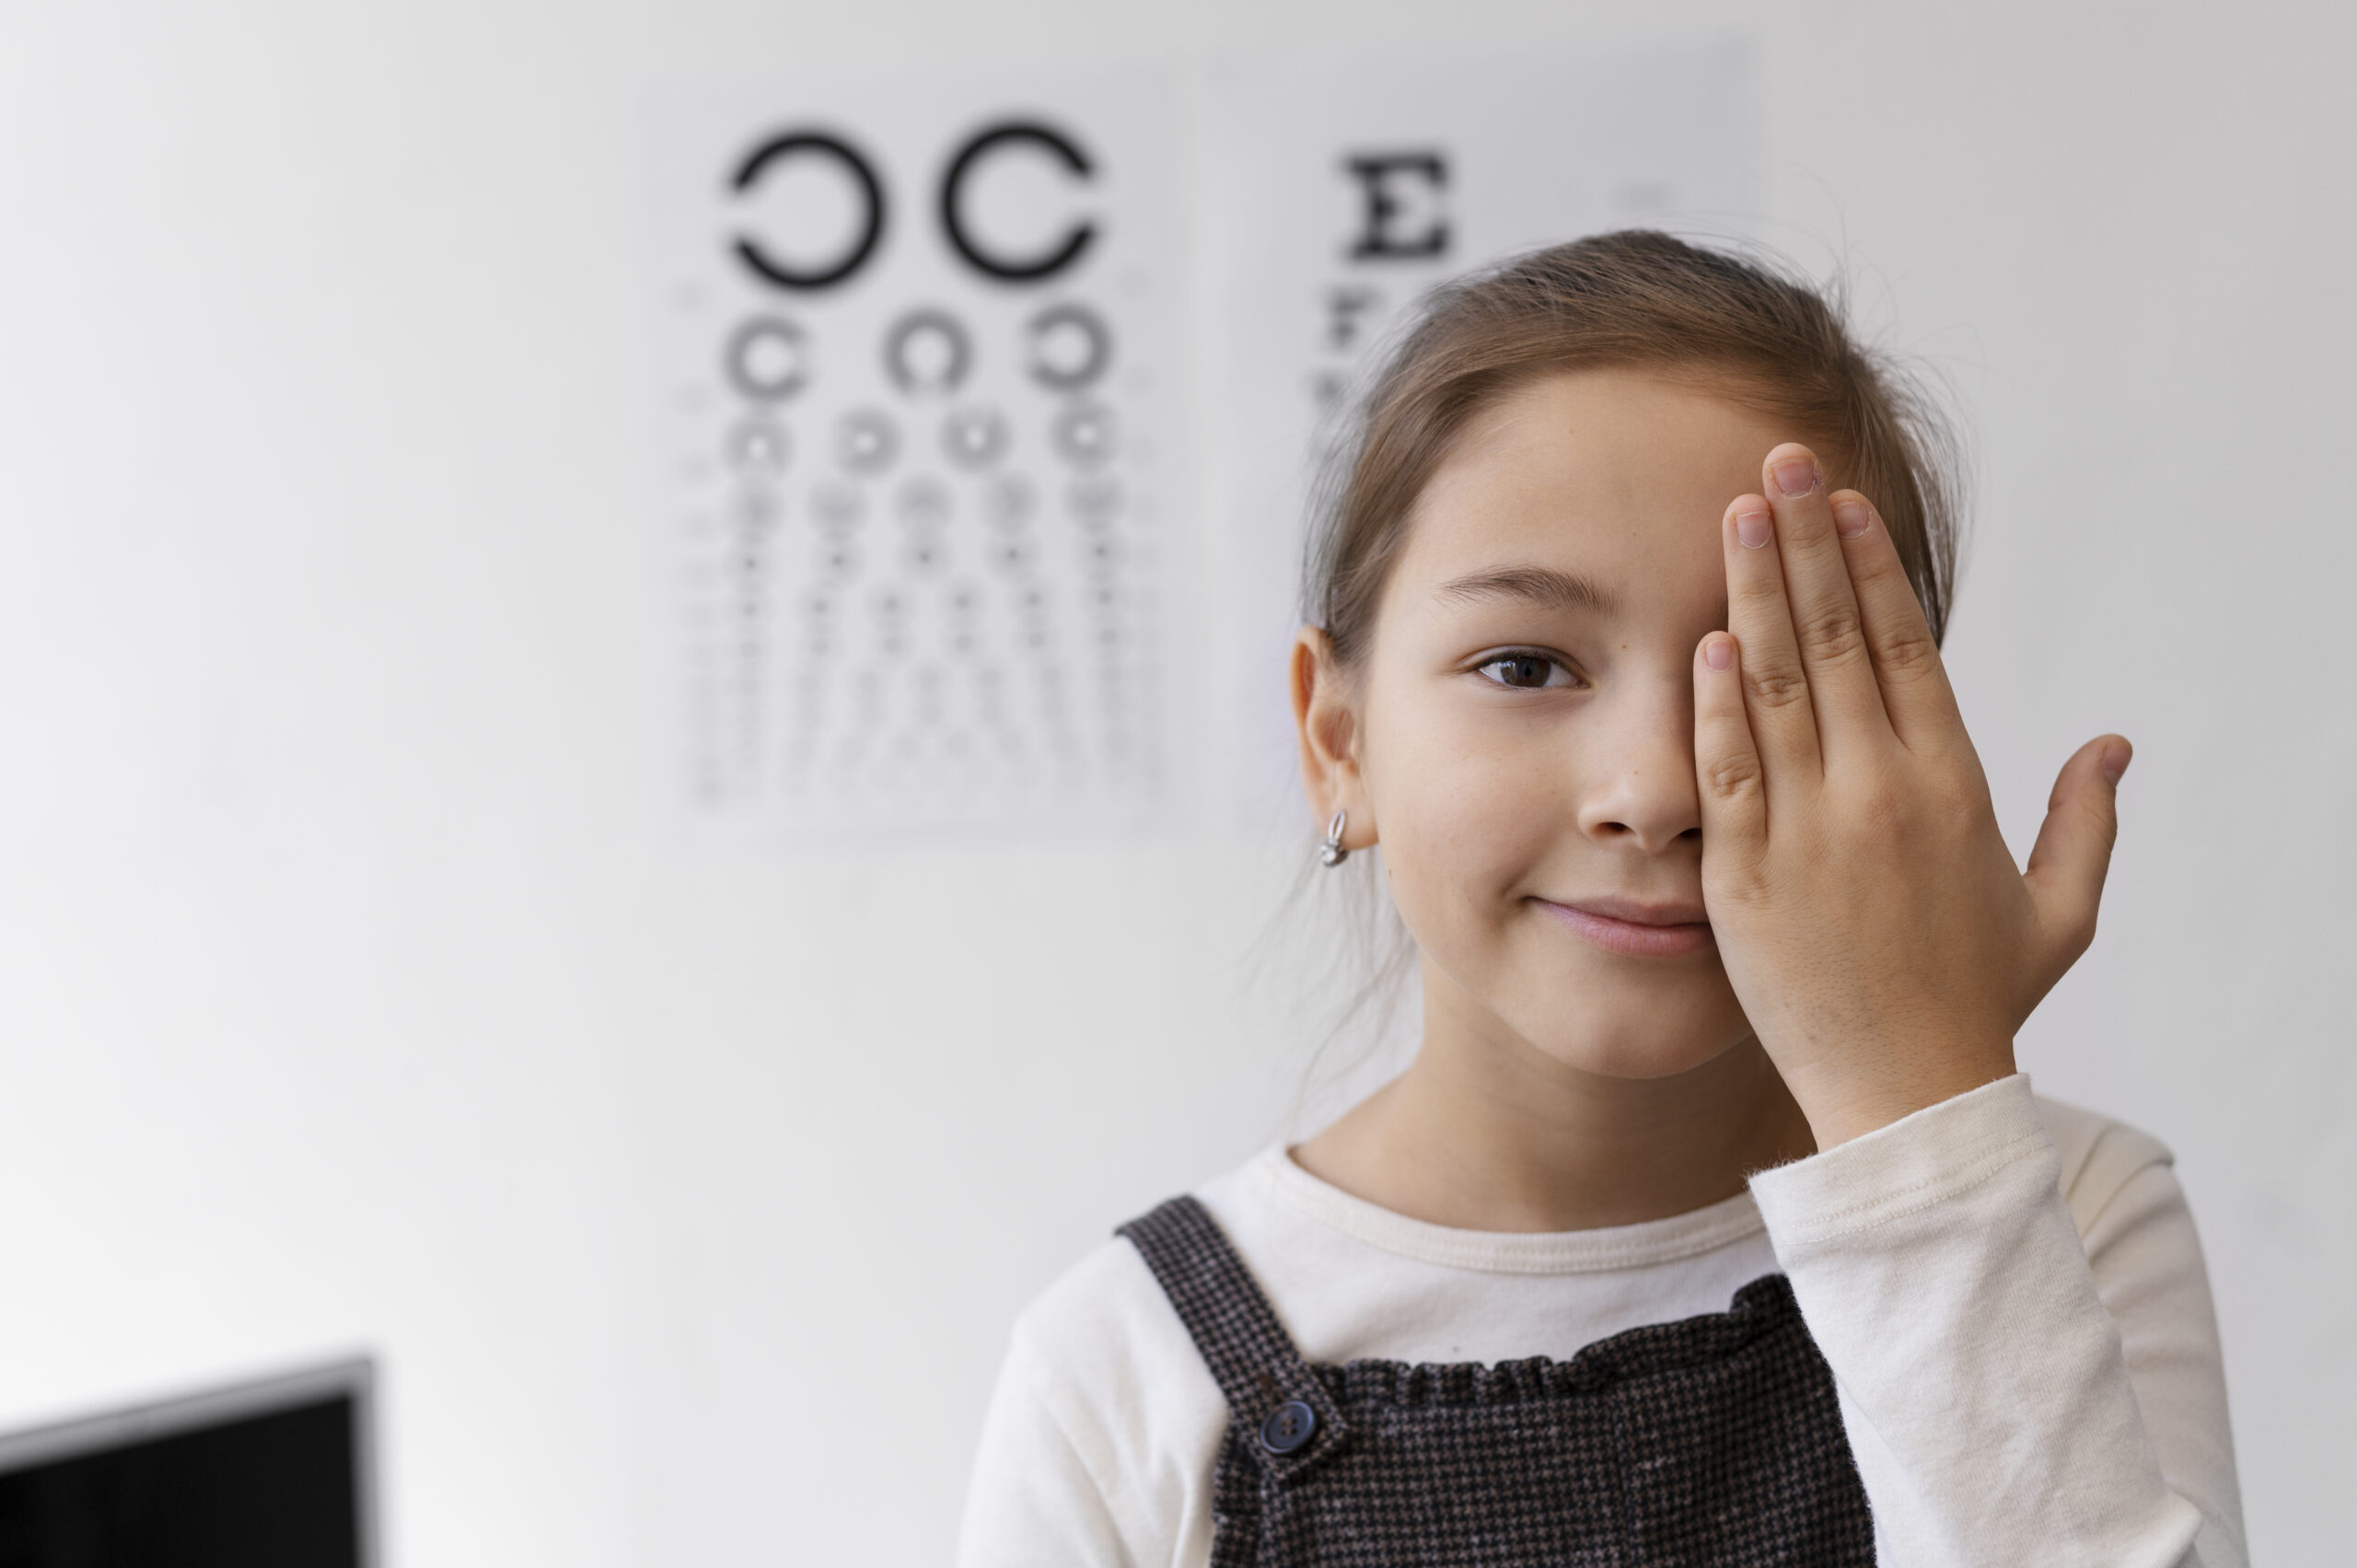 العين الكسولة أعراضها وأسبابها.......هي حالة ينخفض فيها القدرة على الرؤية في إحدى العينين أو في كلاهما نتيجةً لعدم استخدام العين بشكل منتظم خلال فترة تطوير البصر